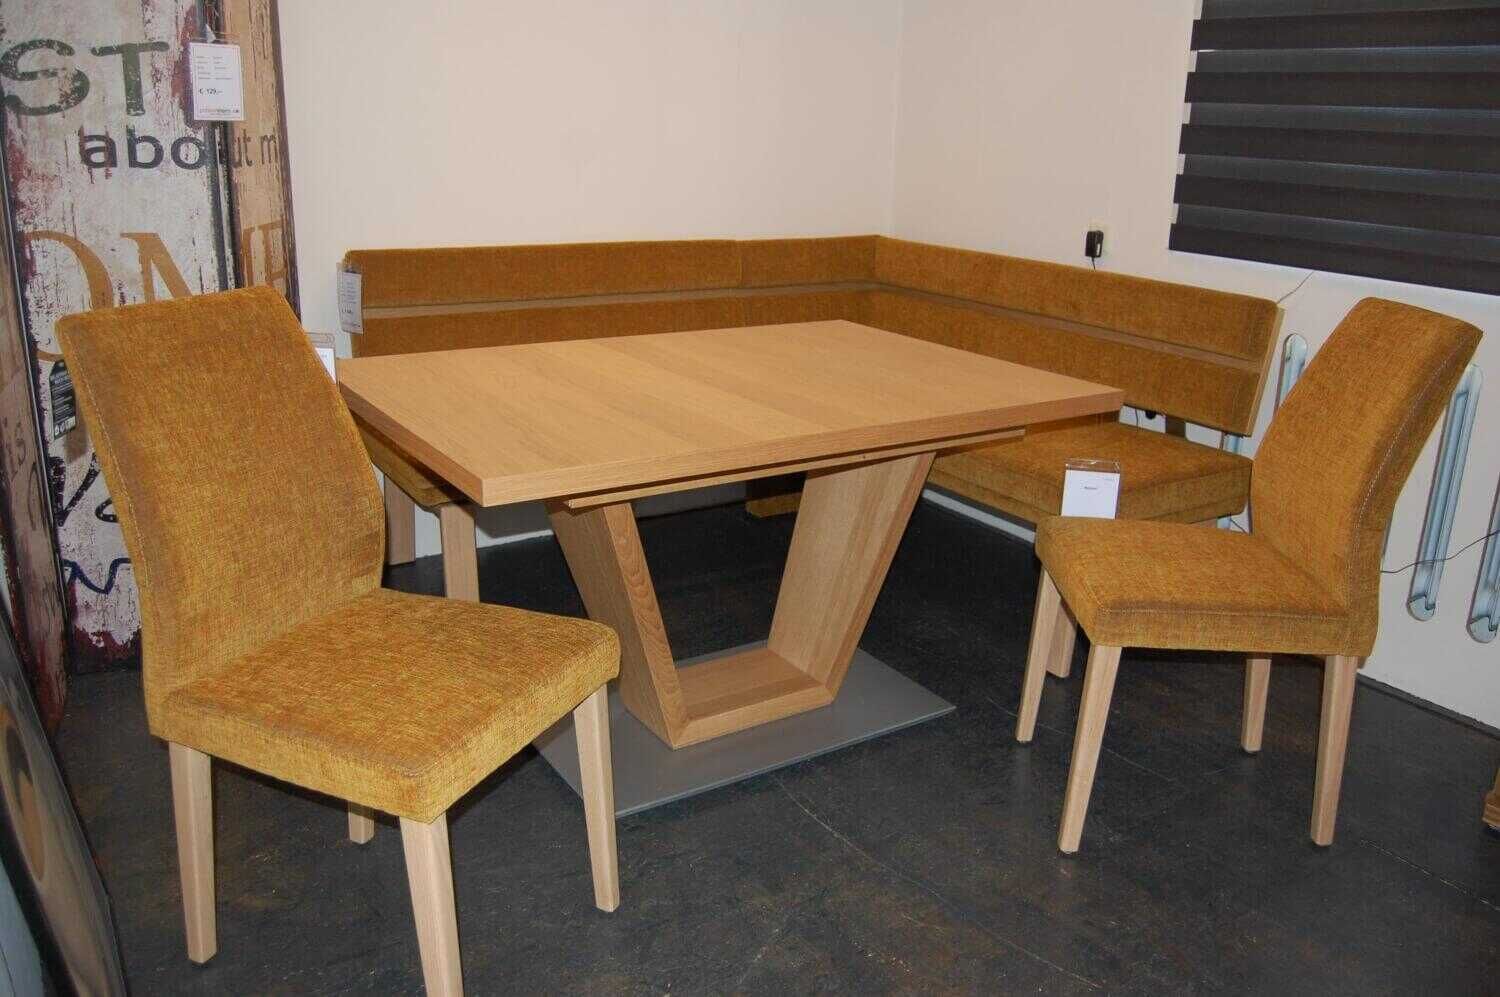 Essgruppe Katar Wildeiche Natur Essecke Tisch 2 Stühle